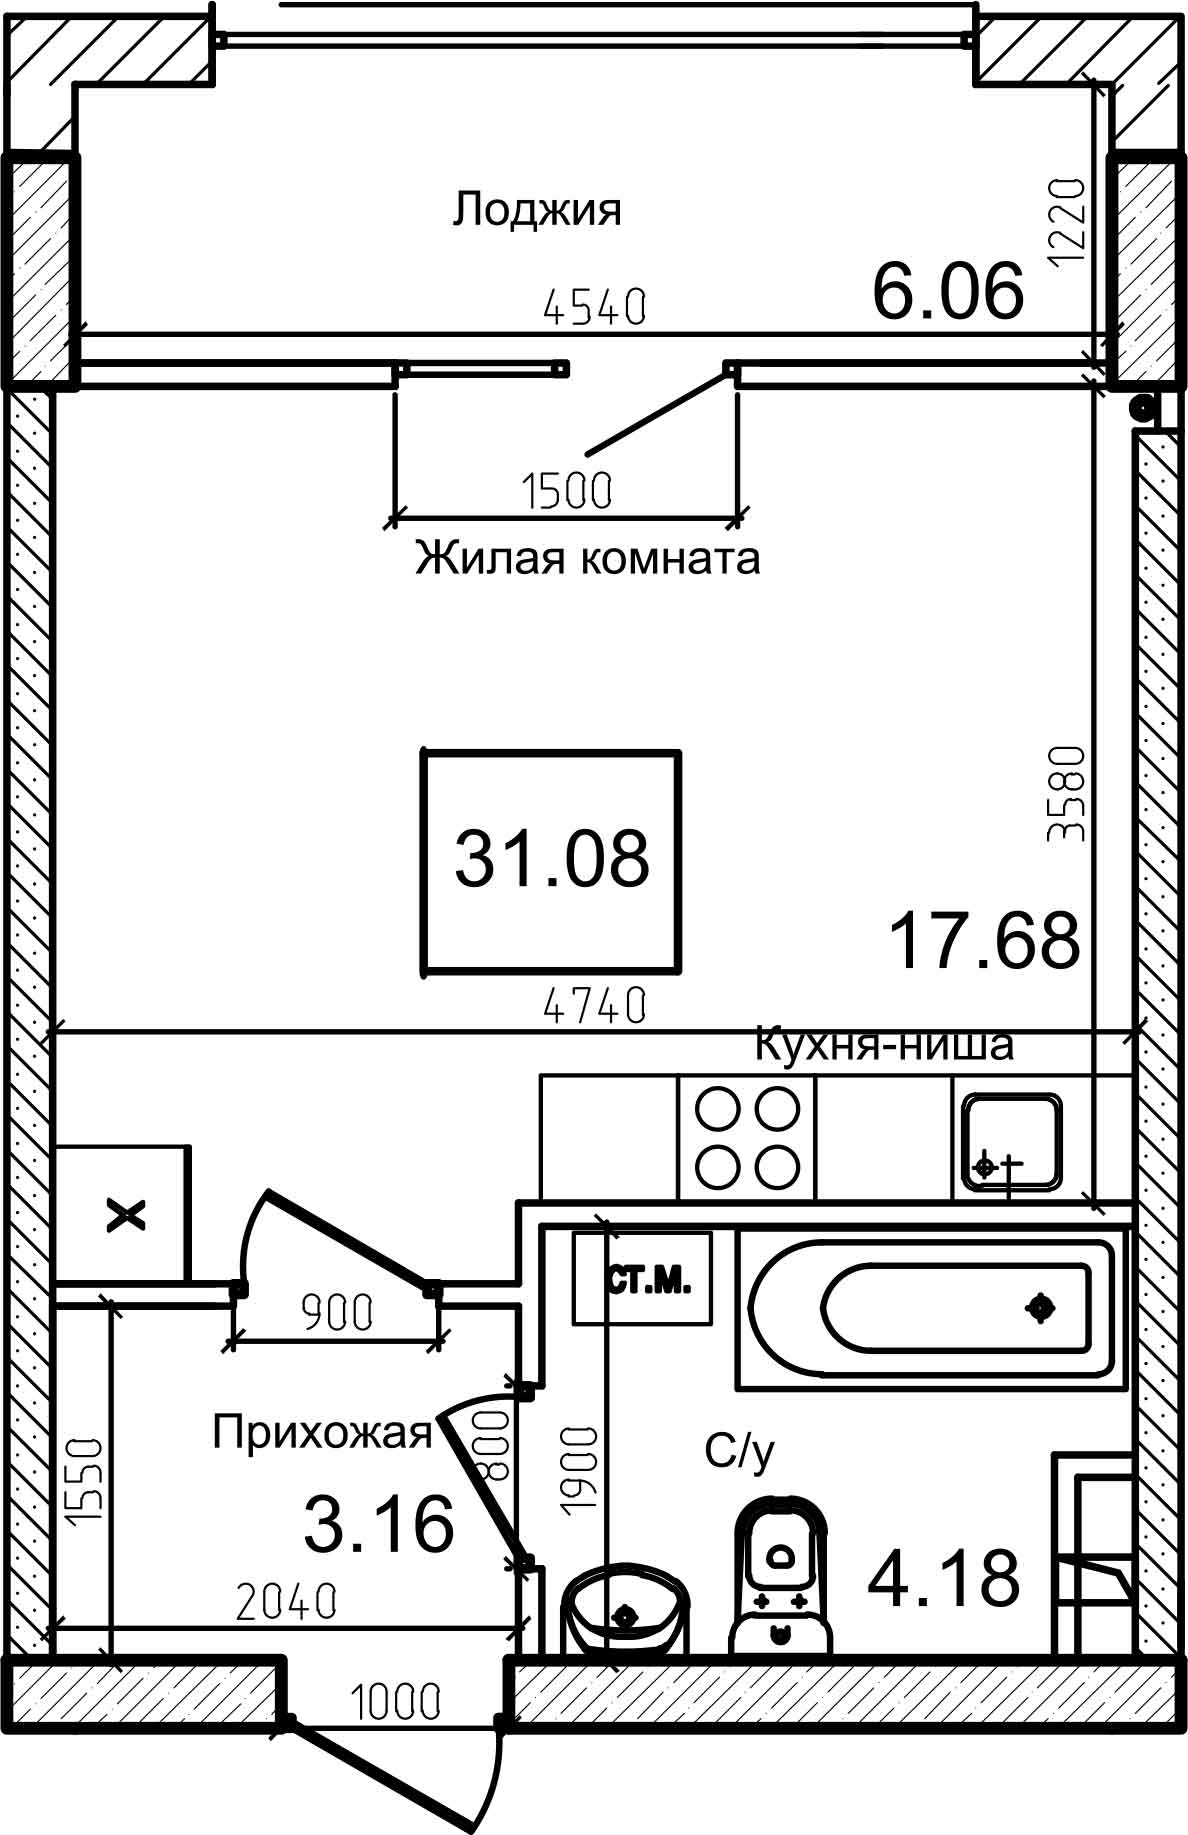 Планування Smart-квартира площею 31.4м2, AB-08-05/00008.